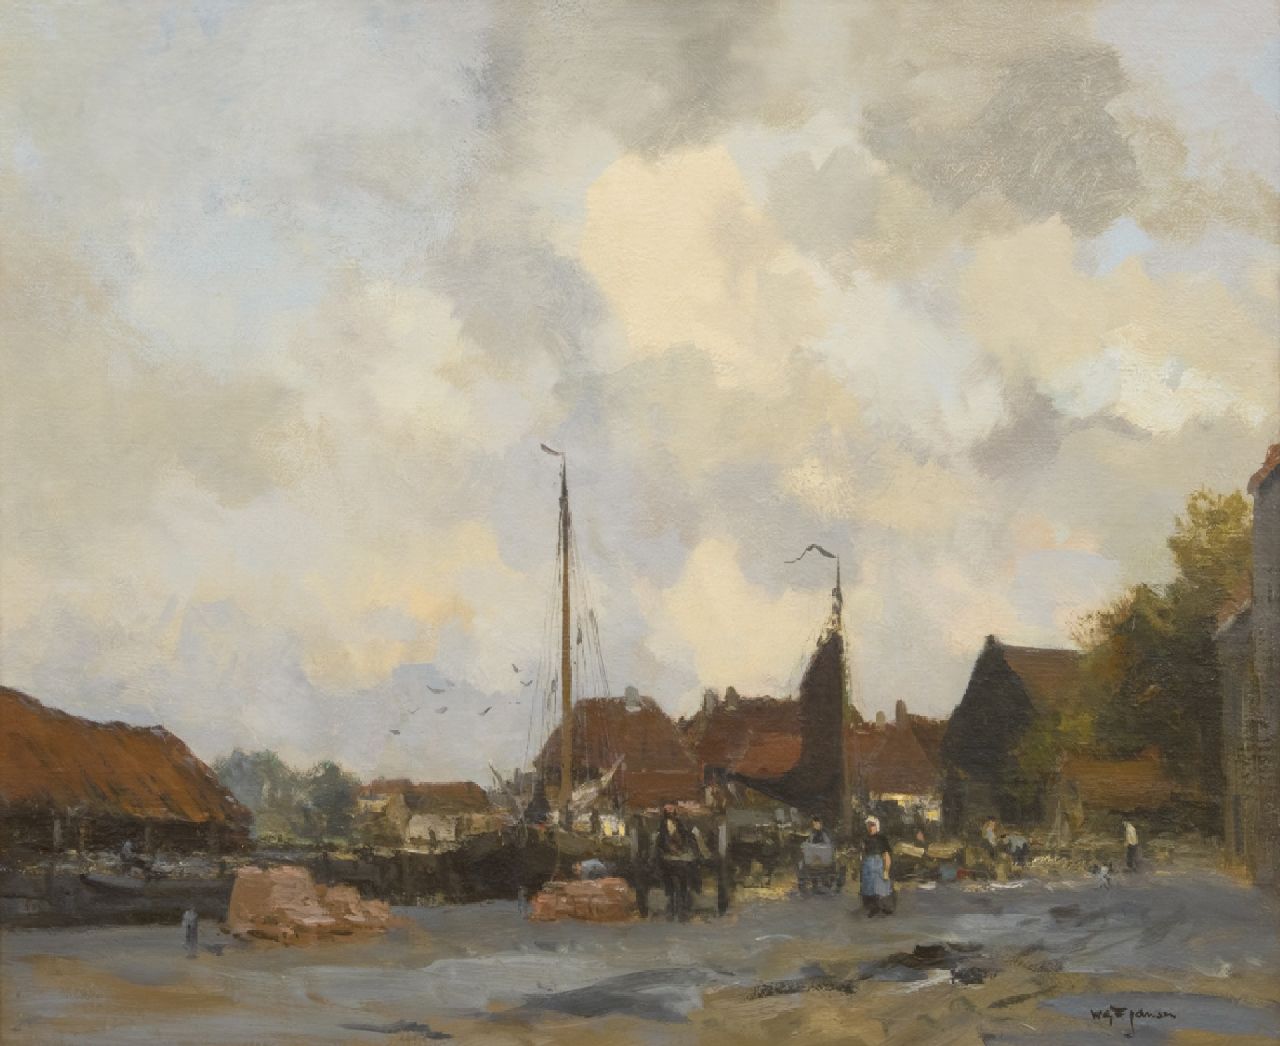 Jansen W.G.F.  | 'Willem' George Frederik Jansen | Schilderijen te koop aangeboden | Binnenhaven, olieverf op doek 63,0 x 76,3 cm, gesigneerd rechtsonder